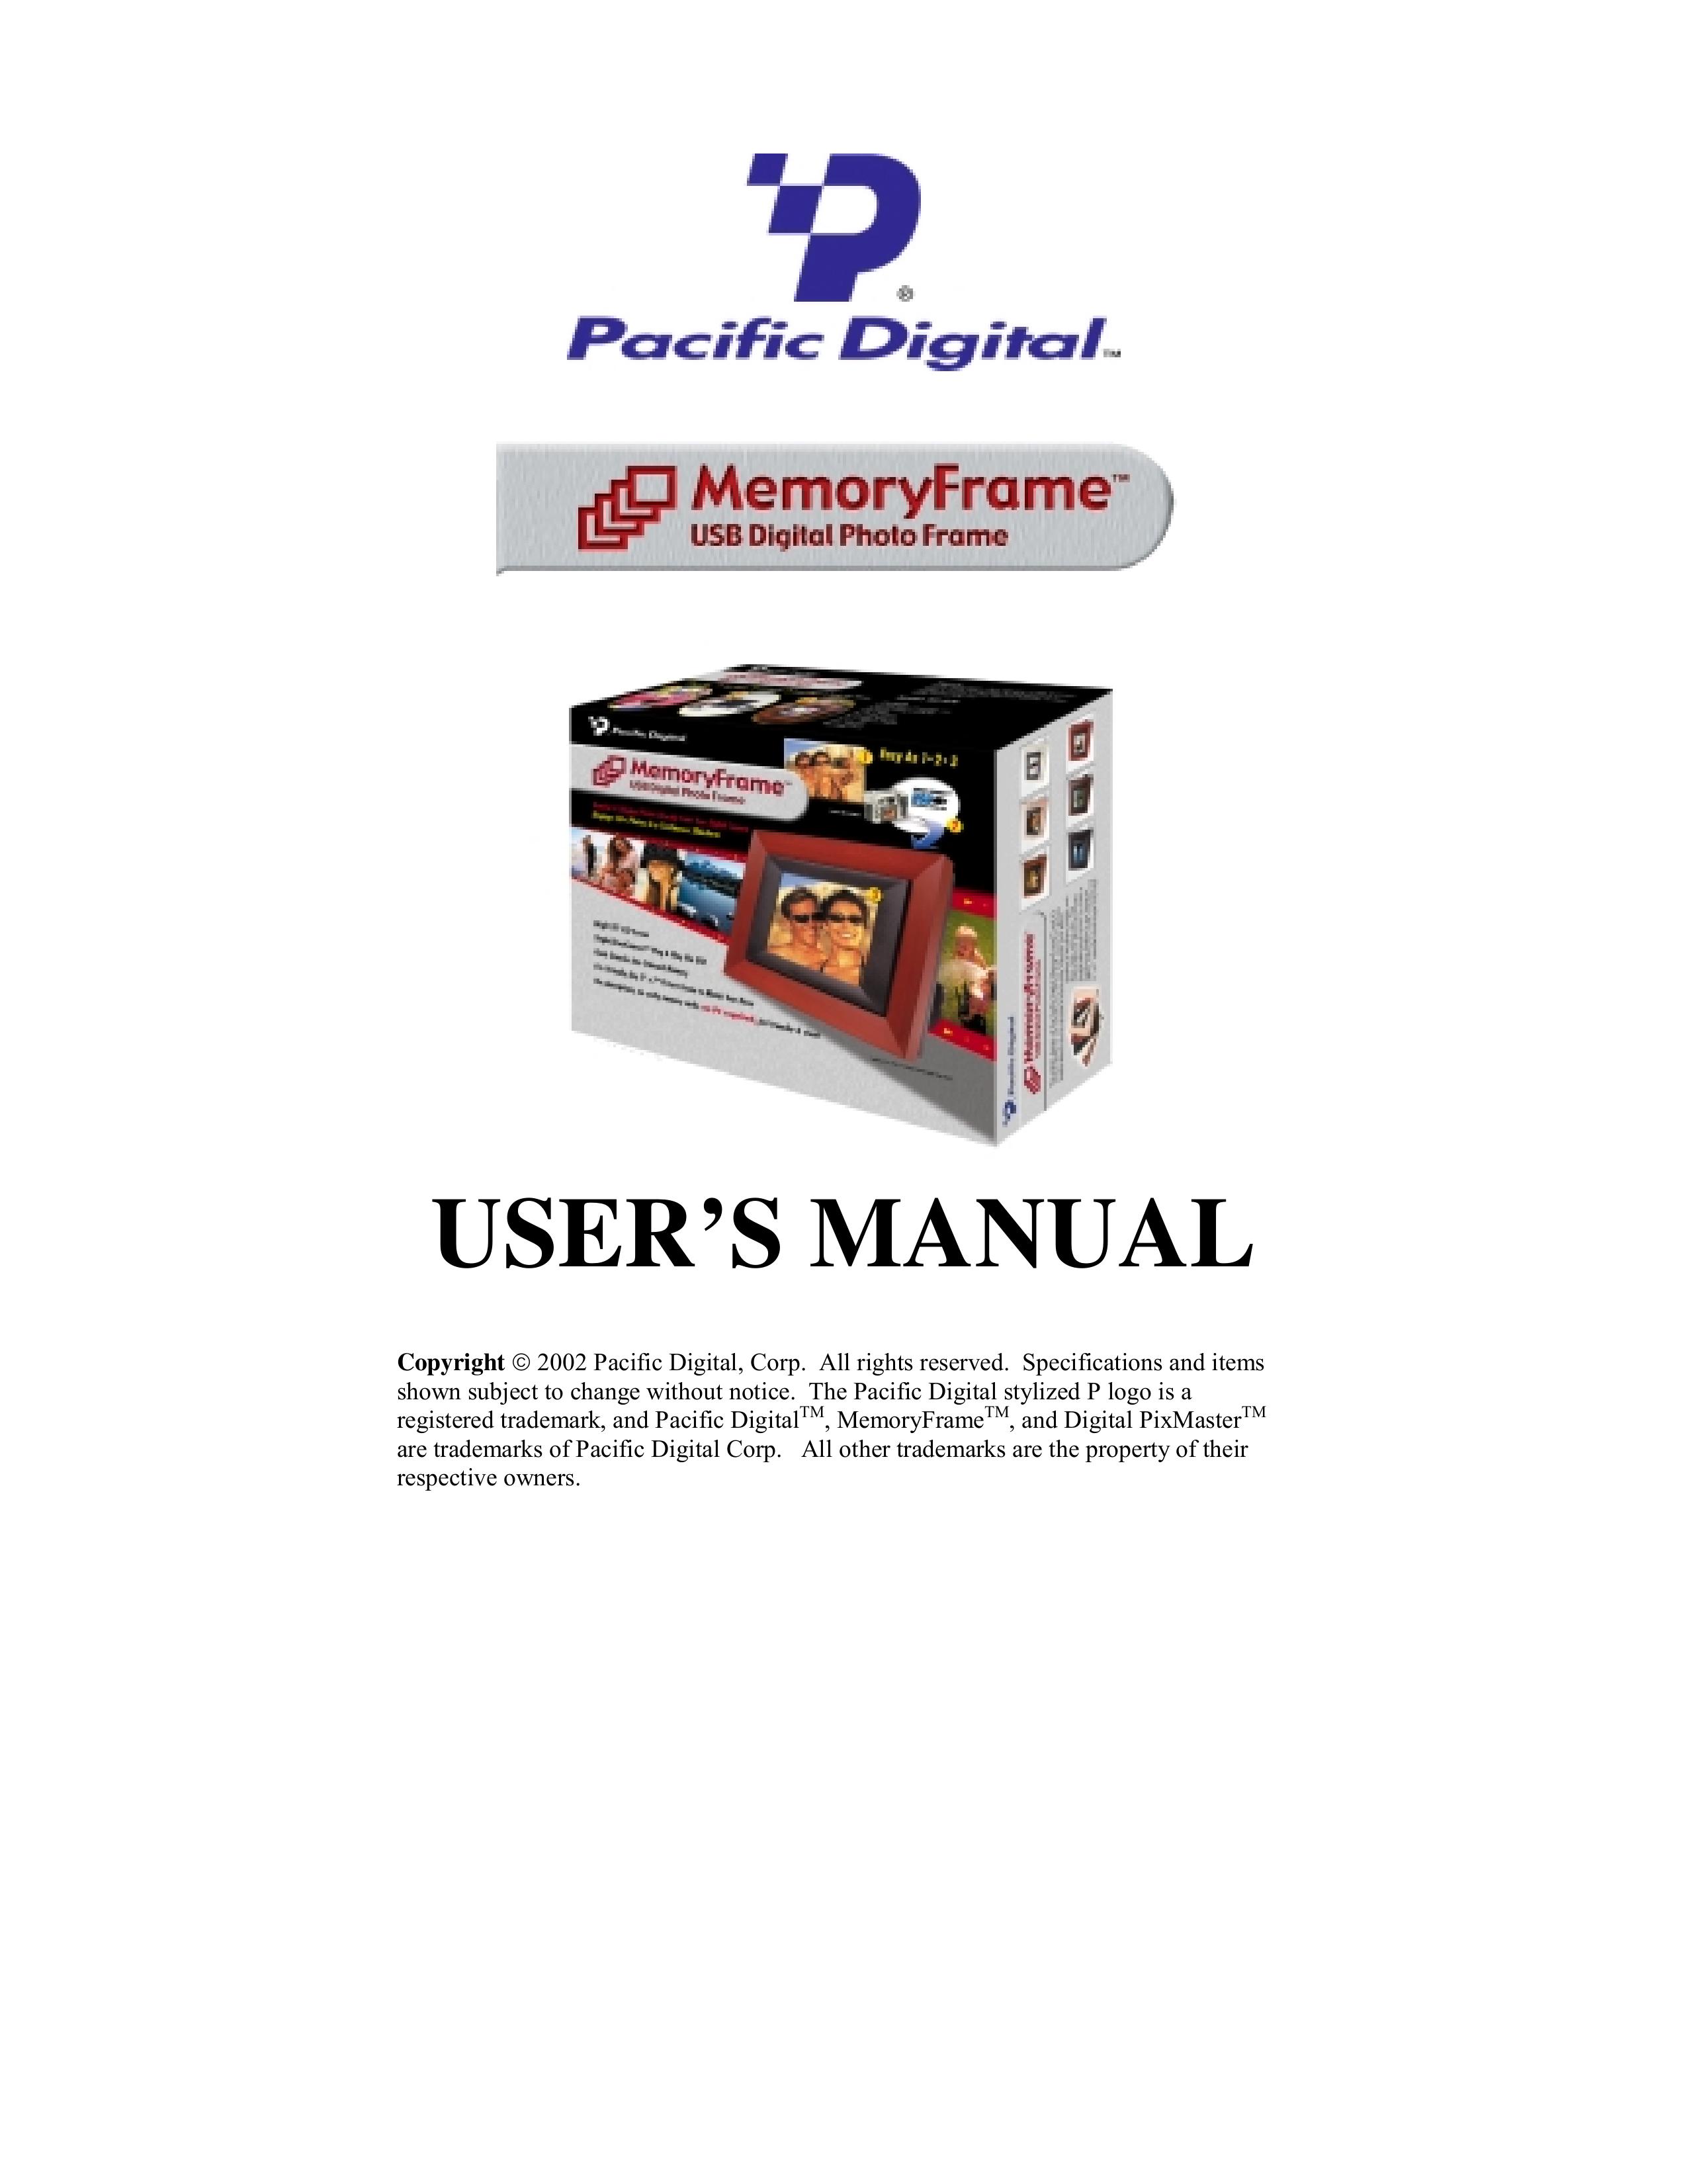 Pacific Digital Digital Pacific USB Digital Photo Frame MemoryFrame Digital Photo Frame User Manual